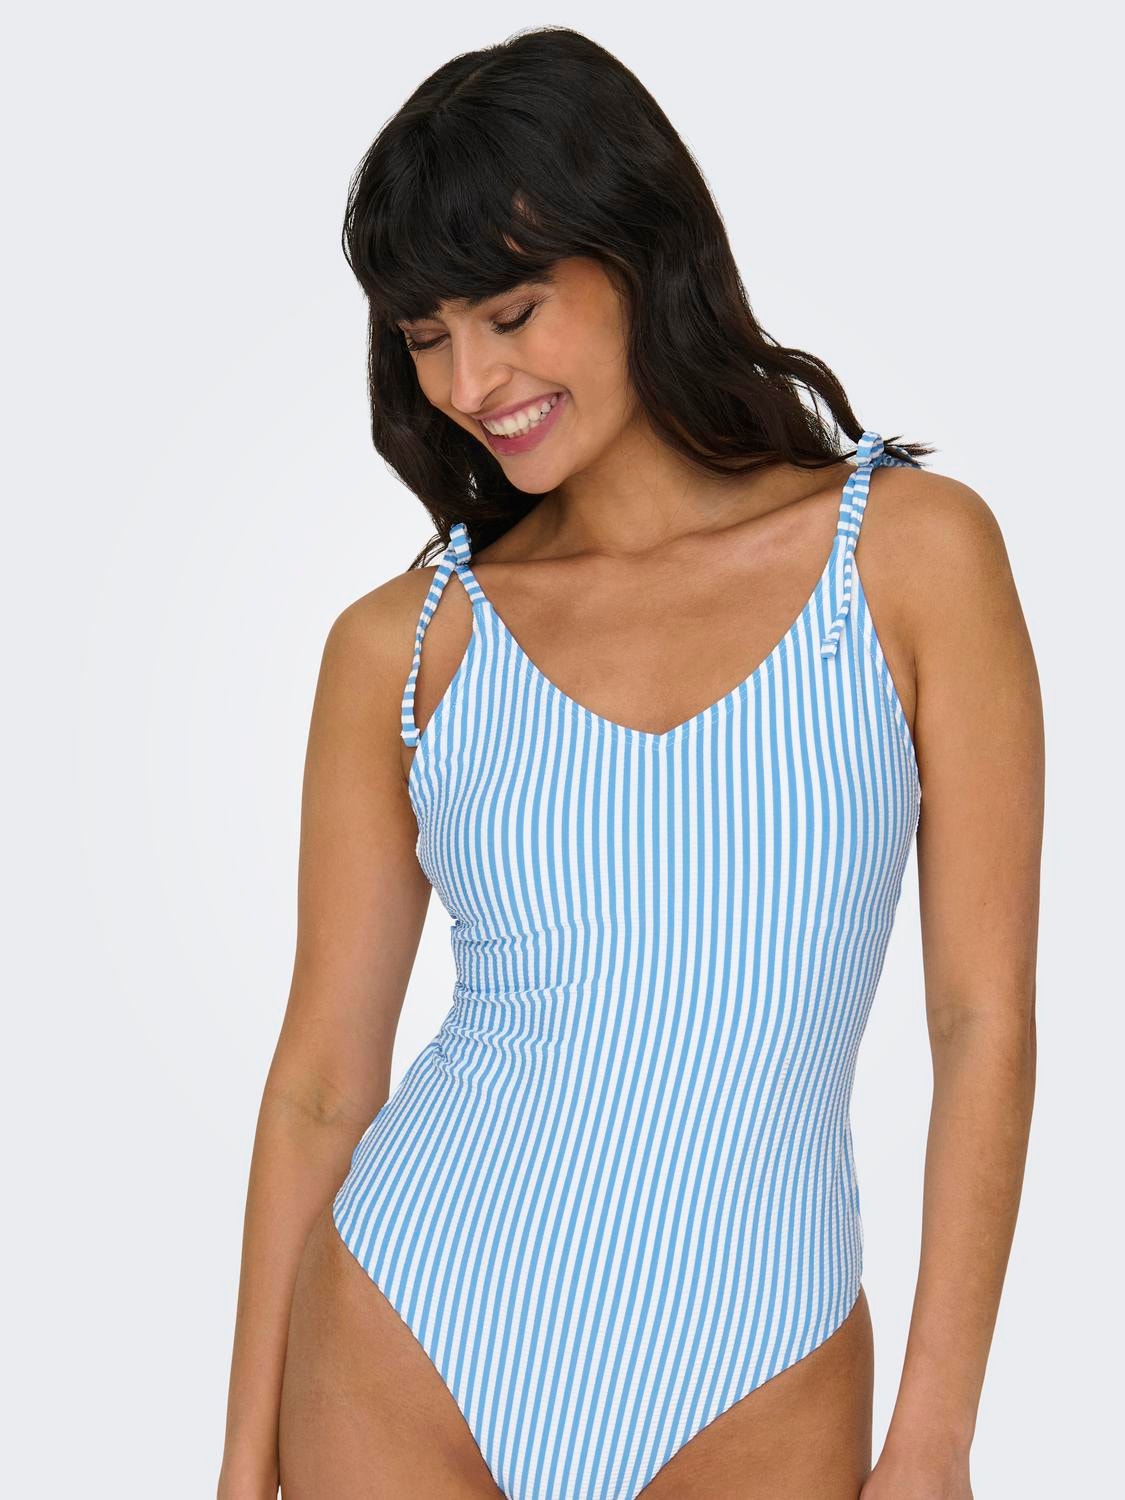 ONLY High waist Adjustable shoulder straps Swimwear -Azure Blue - 15250479